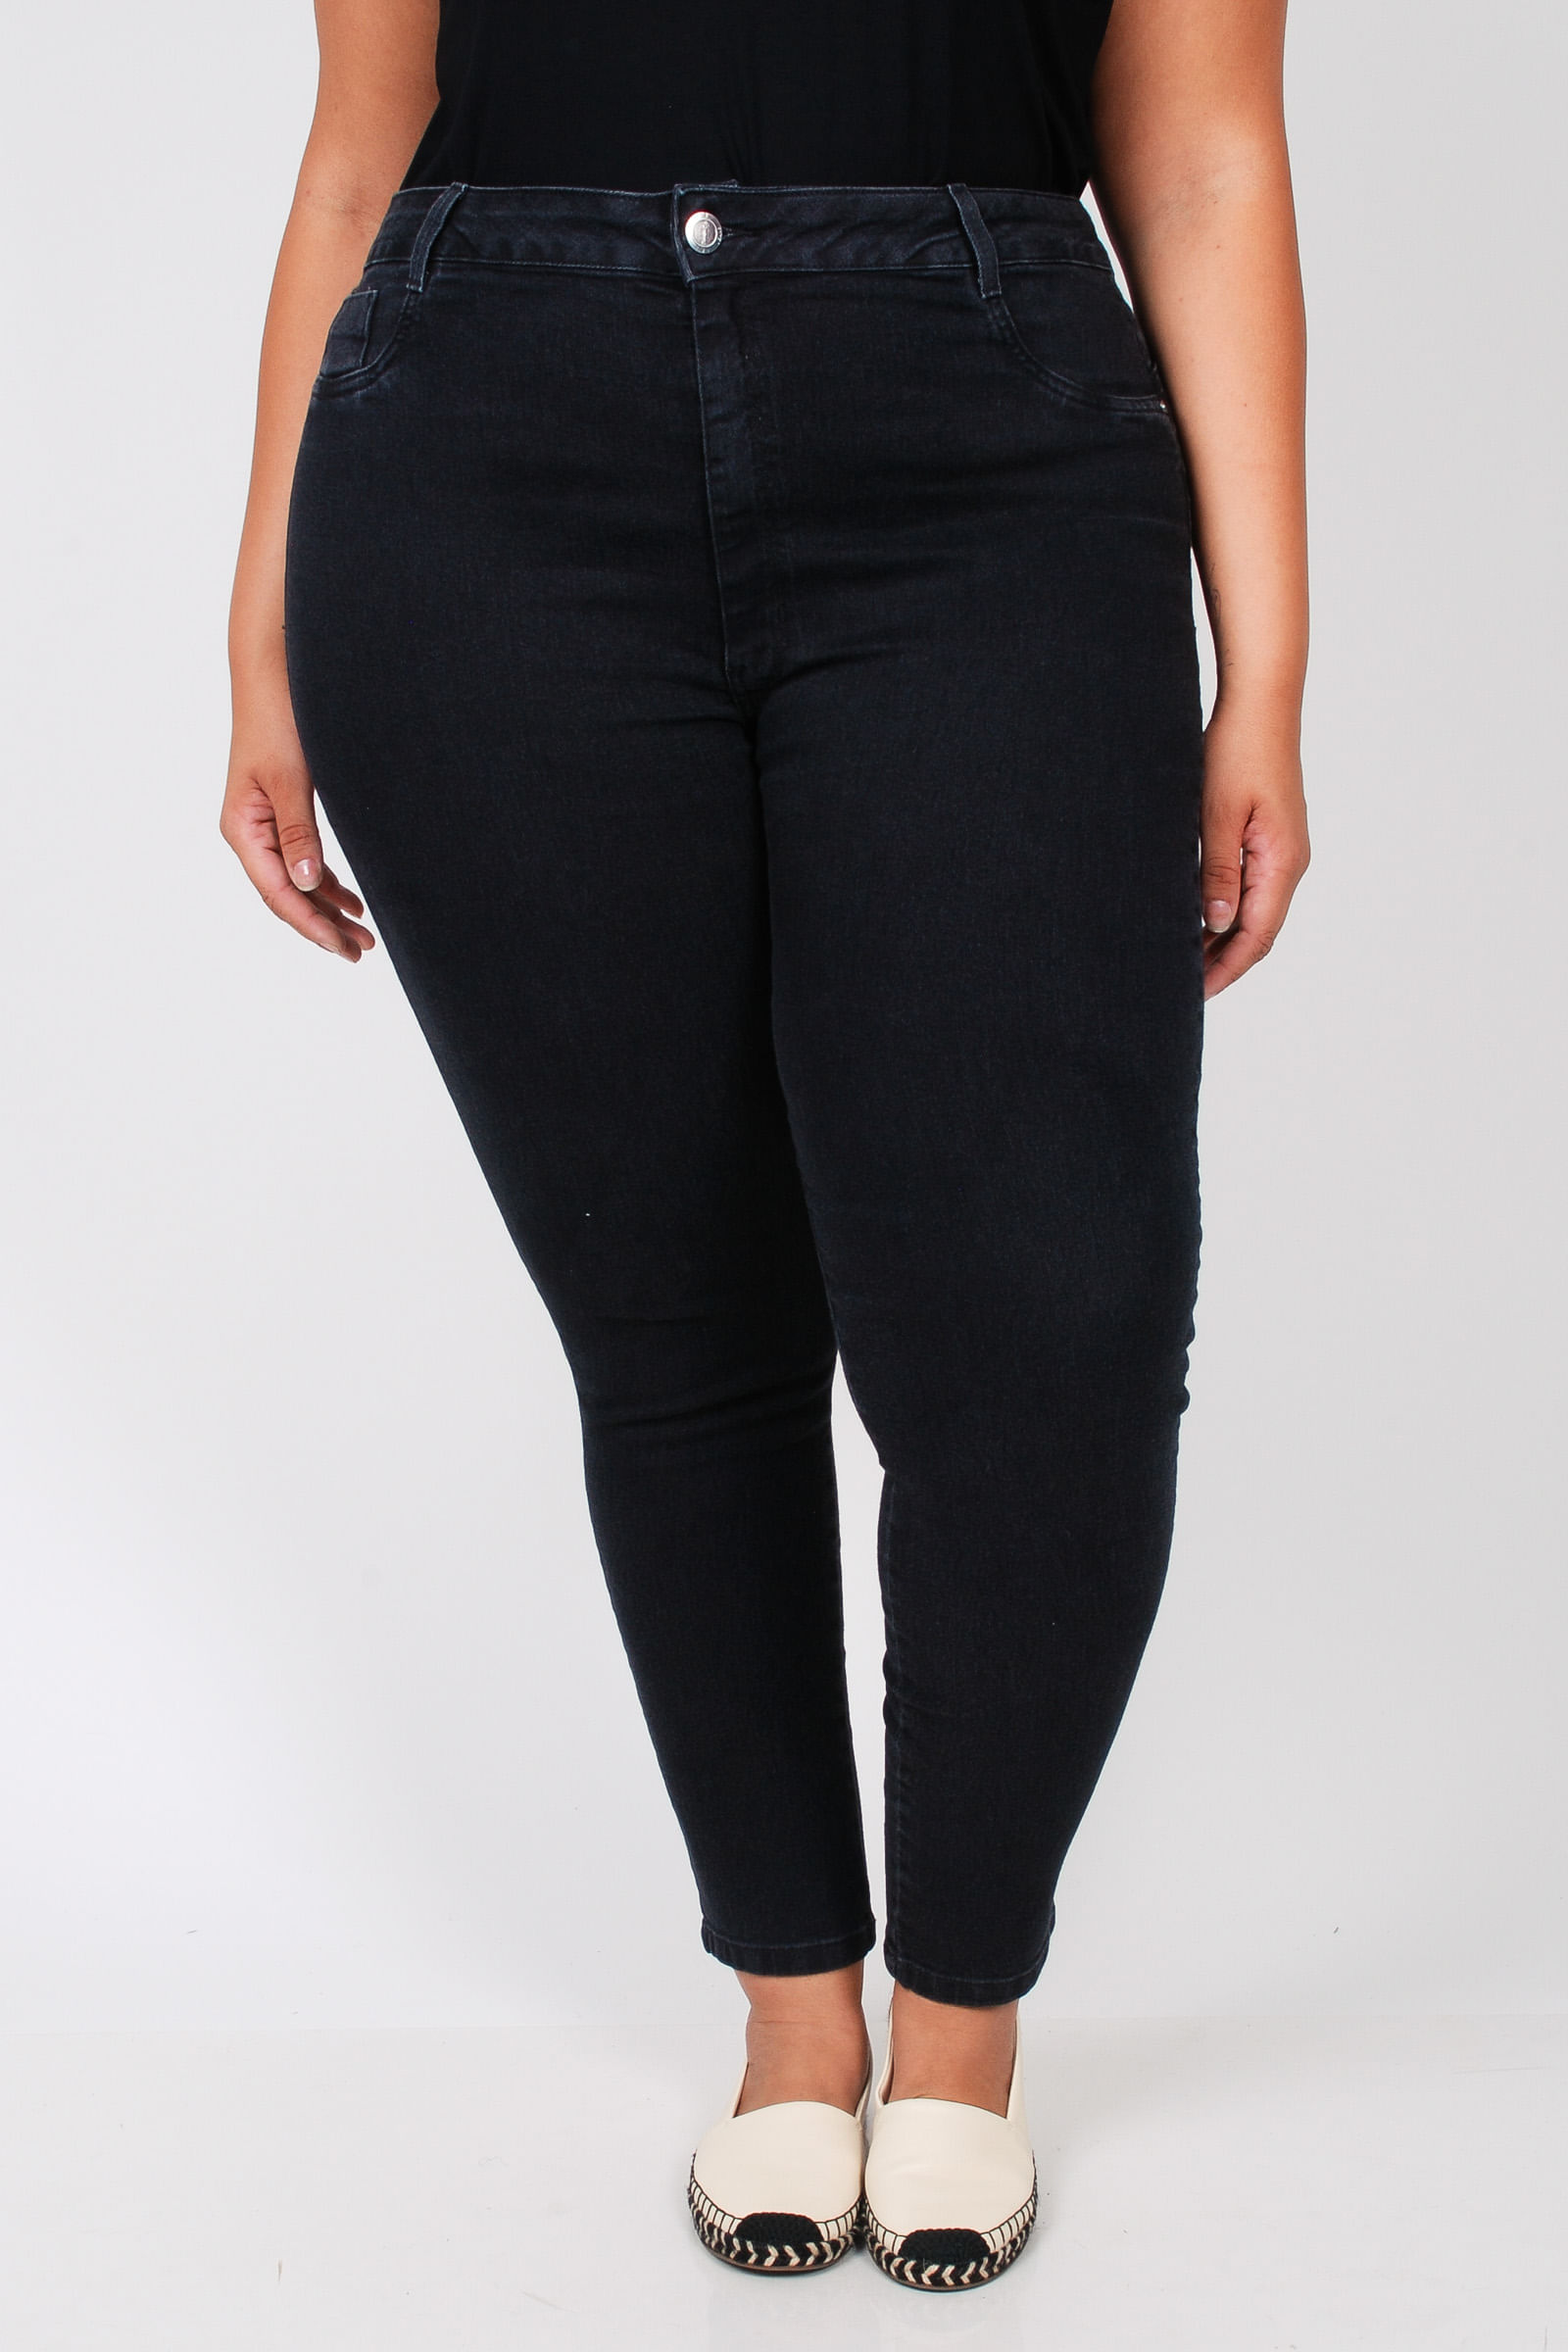 Calca-skinny-black-jeans-plus-size_0103_1